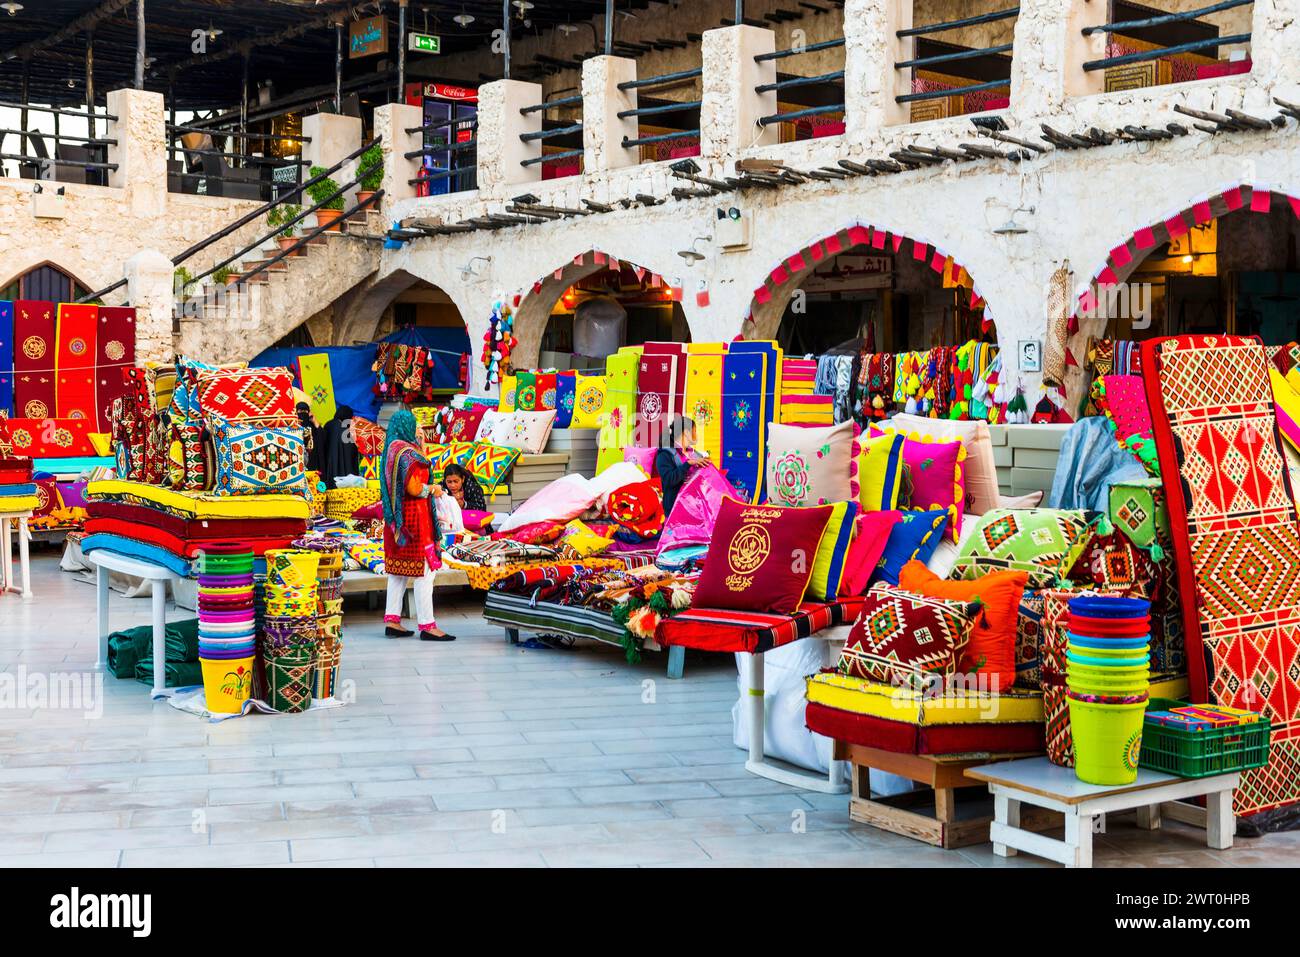 Place de marché avec vente de tapis dans Souq Waqif à Doha, musulman, Islam, arabe, Orient, oriental, voyage, culture, histoire culturelle, histoire, vieille ville Banque D'Images